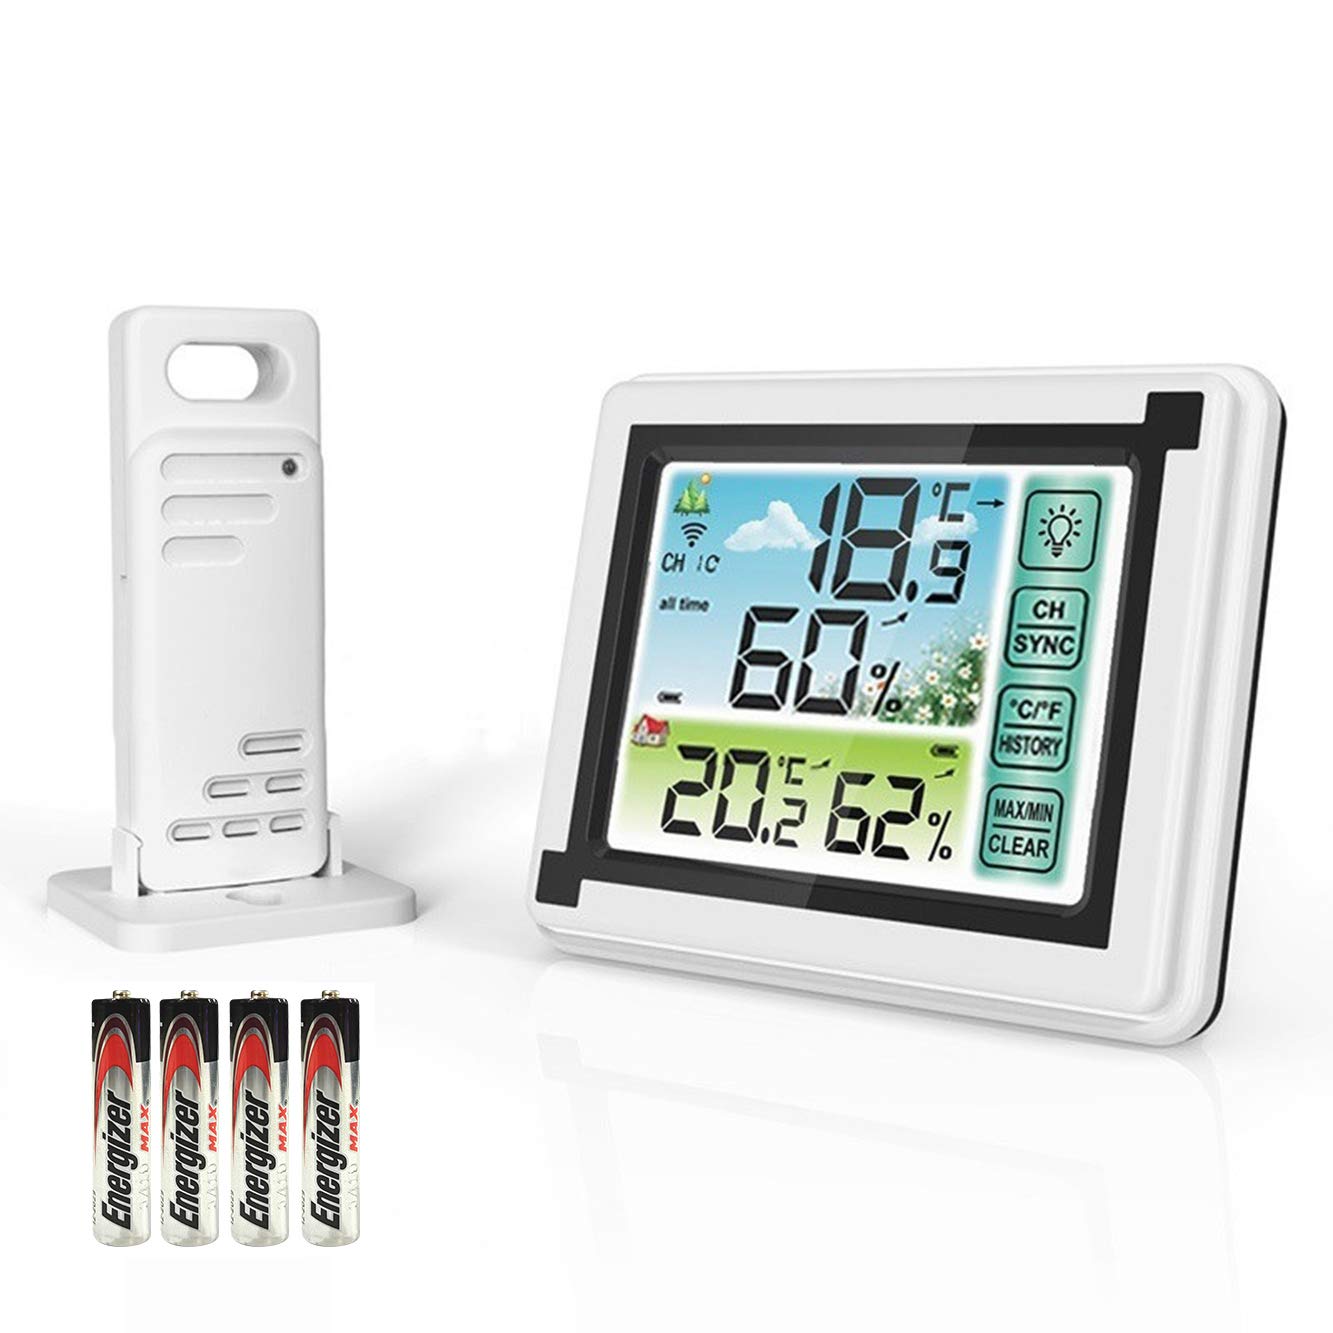 Outdoor Temperature Sensor With AAA Batteries